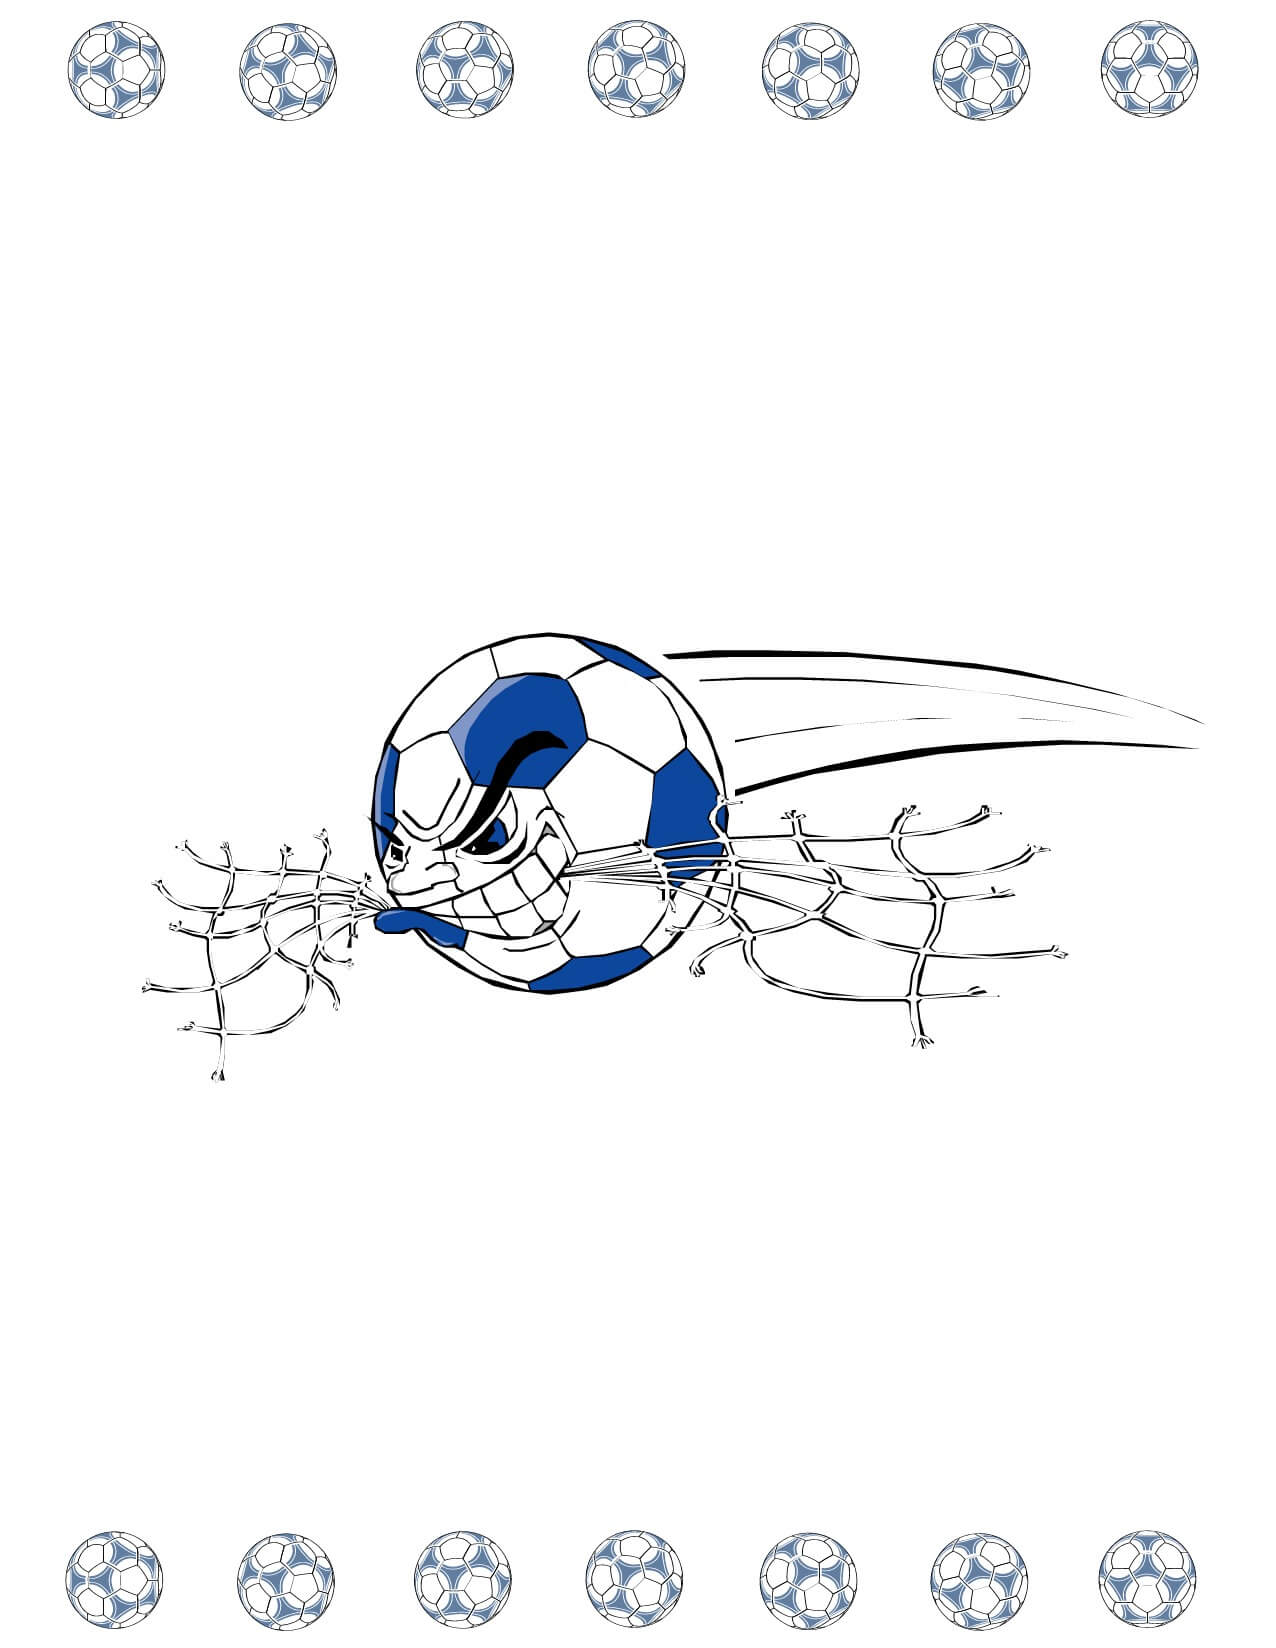 Soccer Award Certificate Maker: Make Personalized Soccer Awards Regarding Soccer Certificate Template